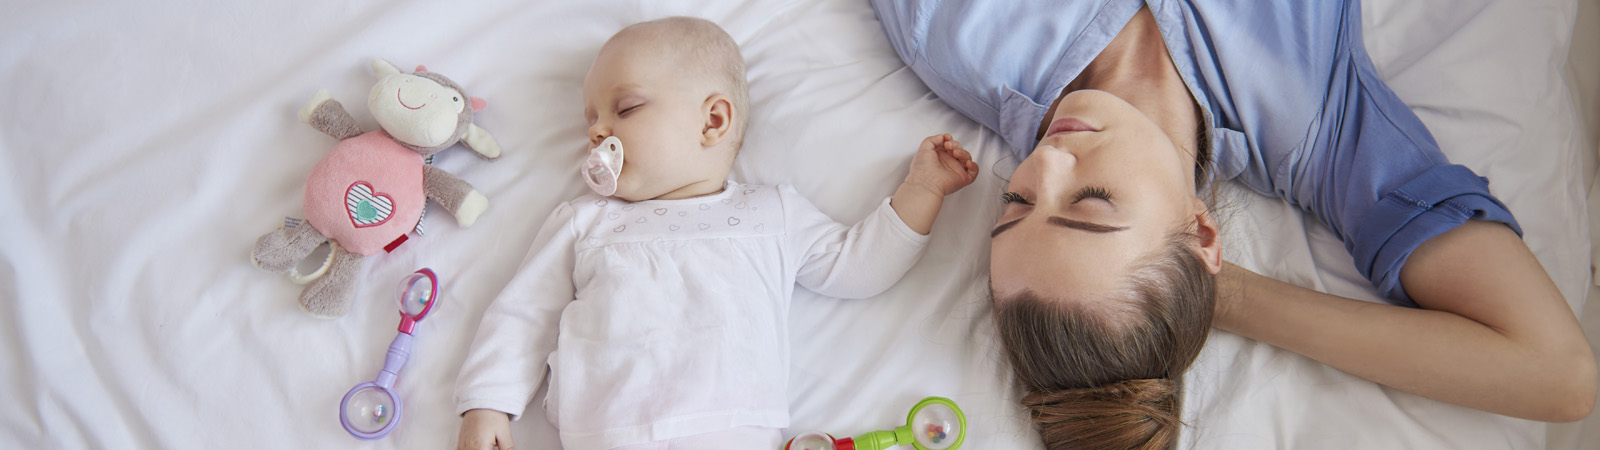 Bebeklerde Uyku Problemi: Kararsız Bebekler